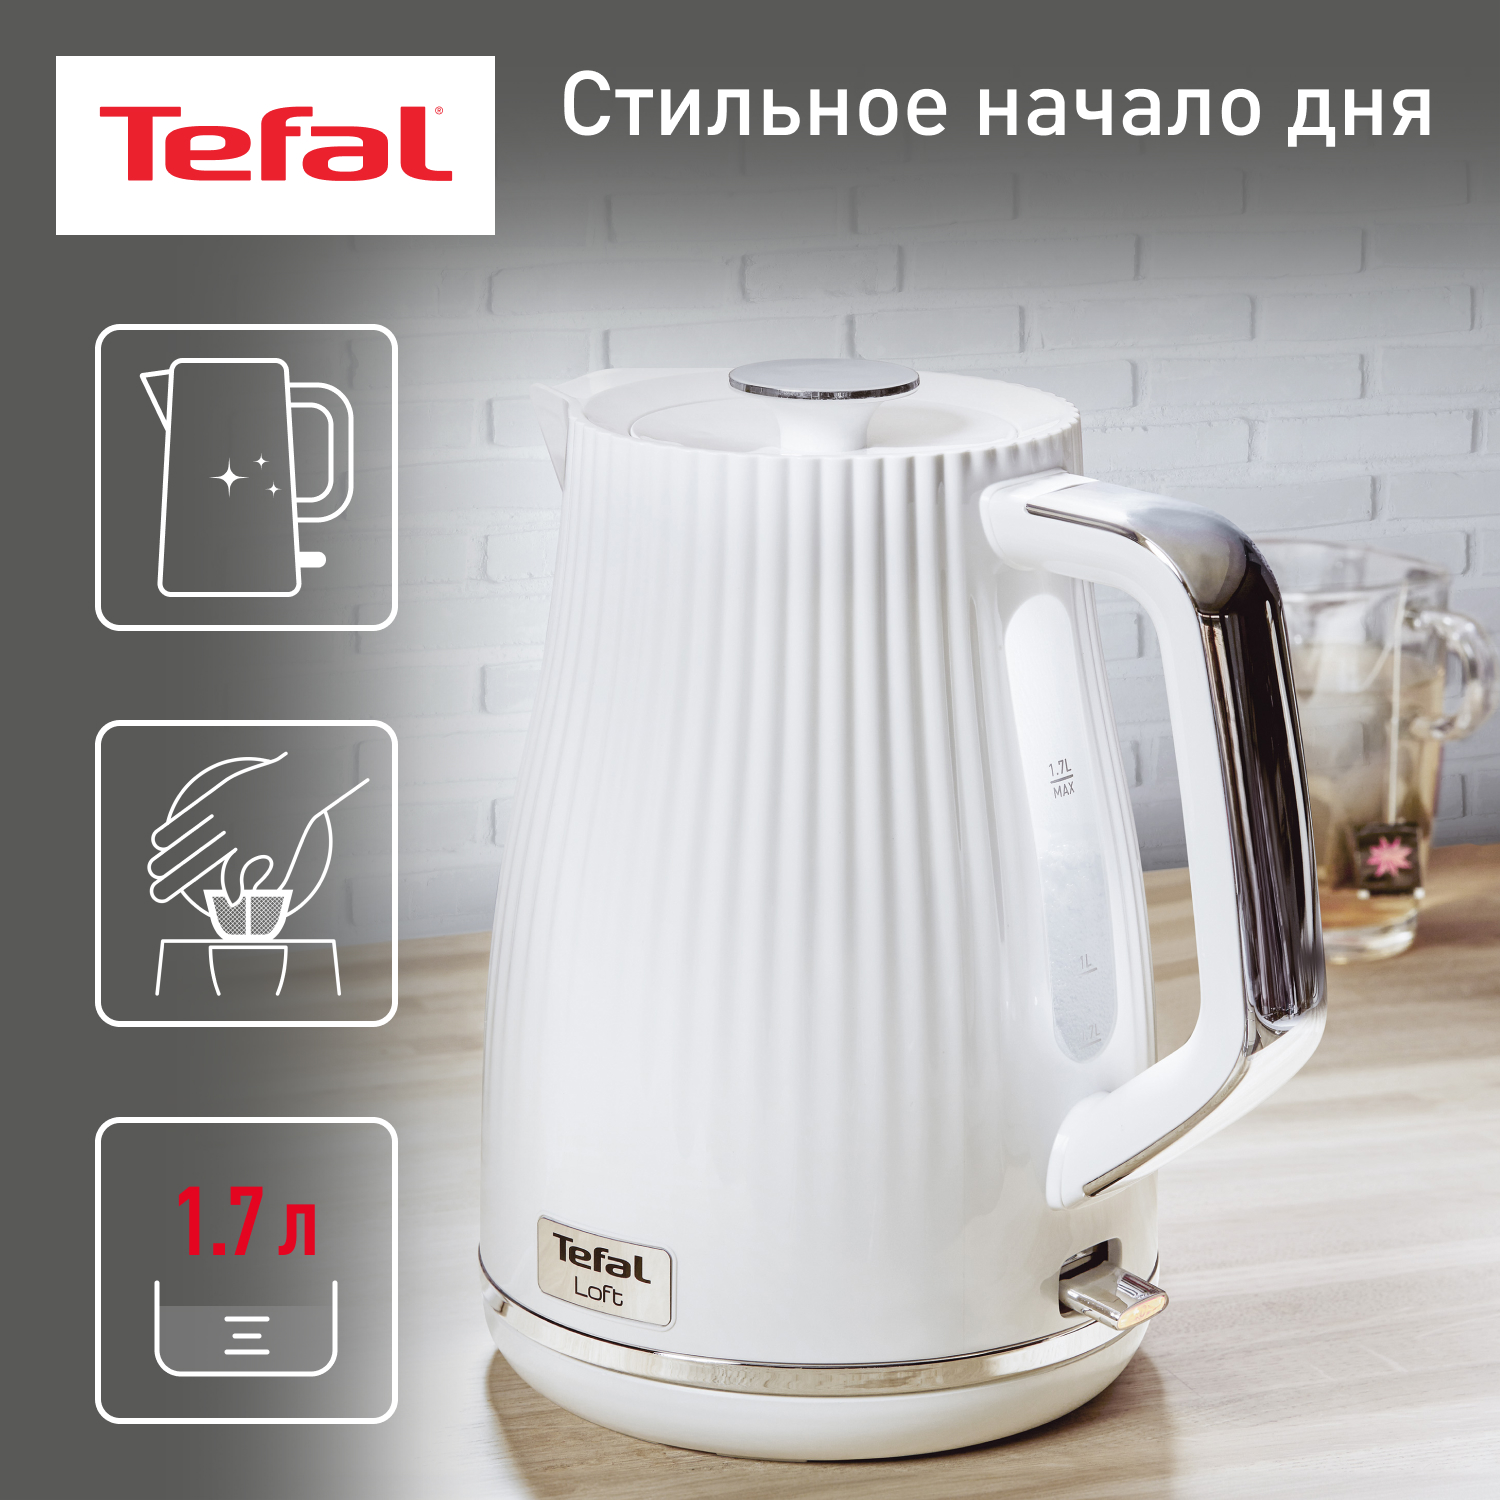 Чайник электрический Tefal KO250130 1.7 л белый крышка стеклянная tefal cocoon d 24 см